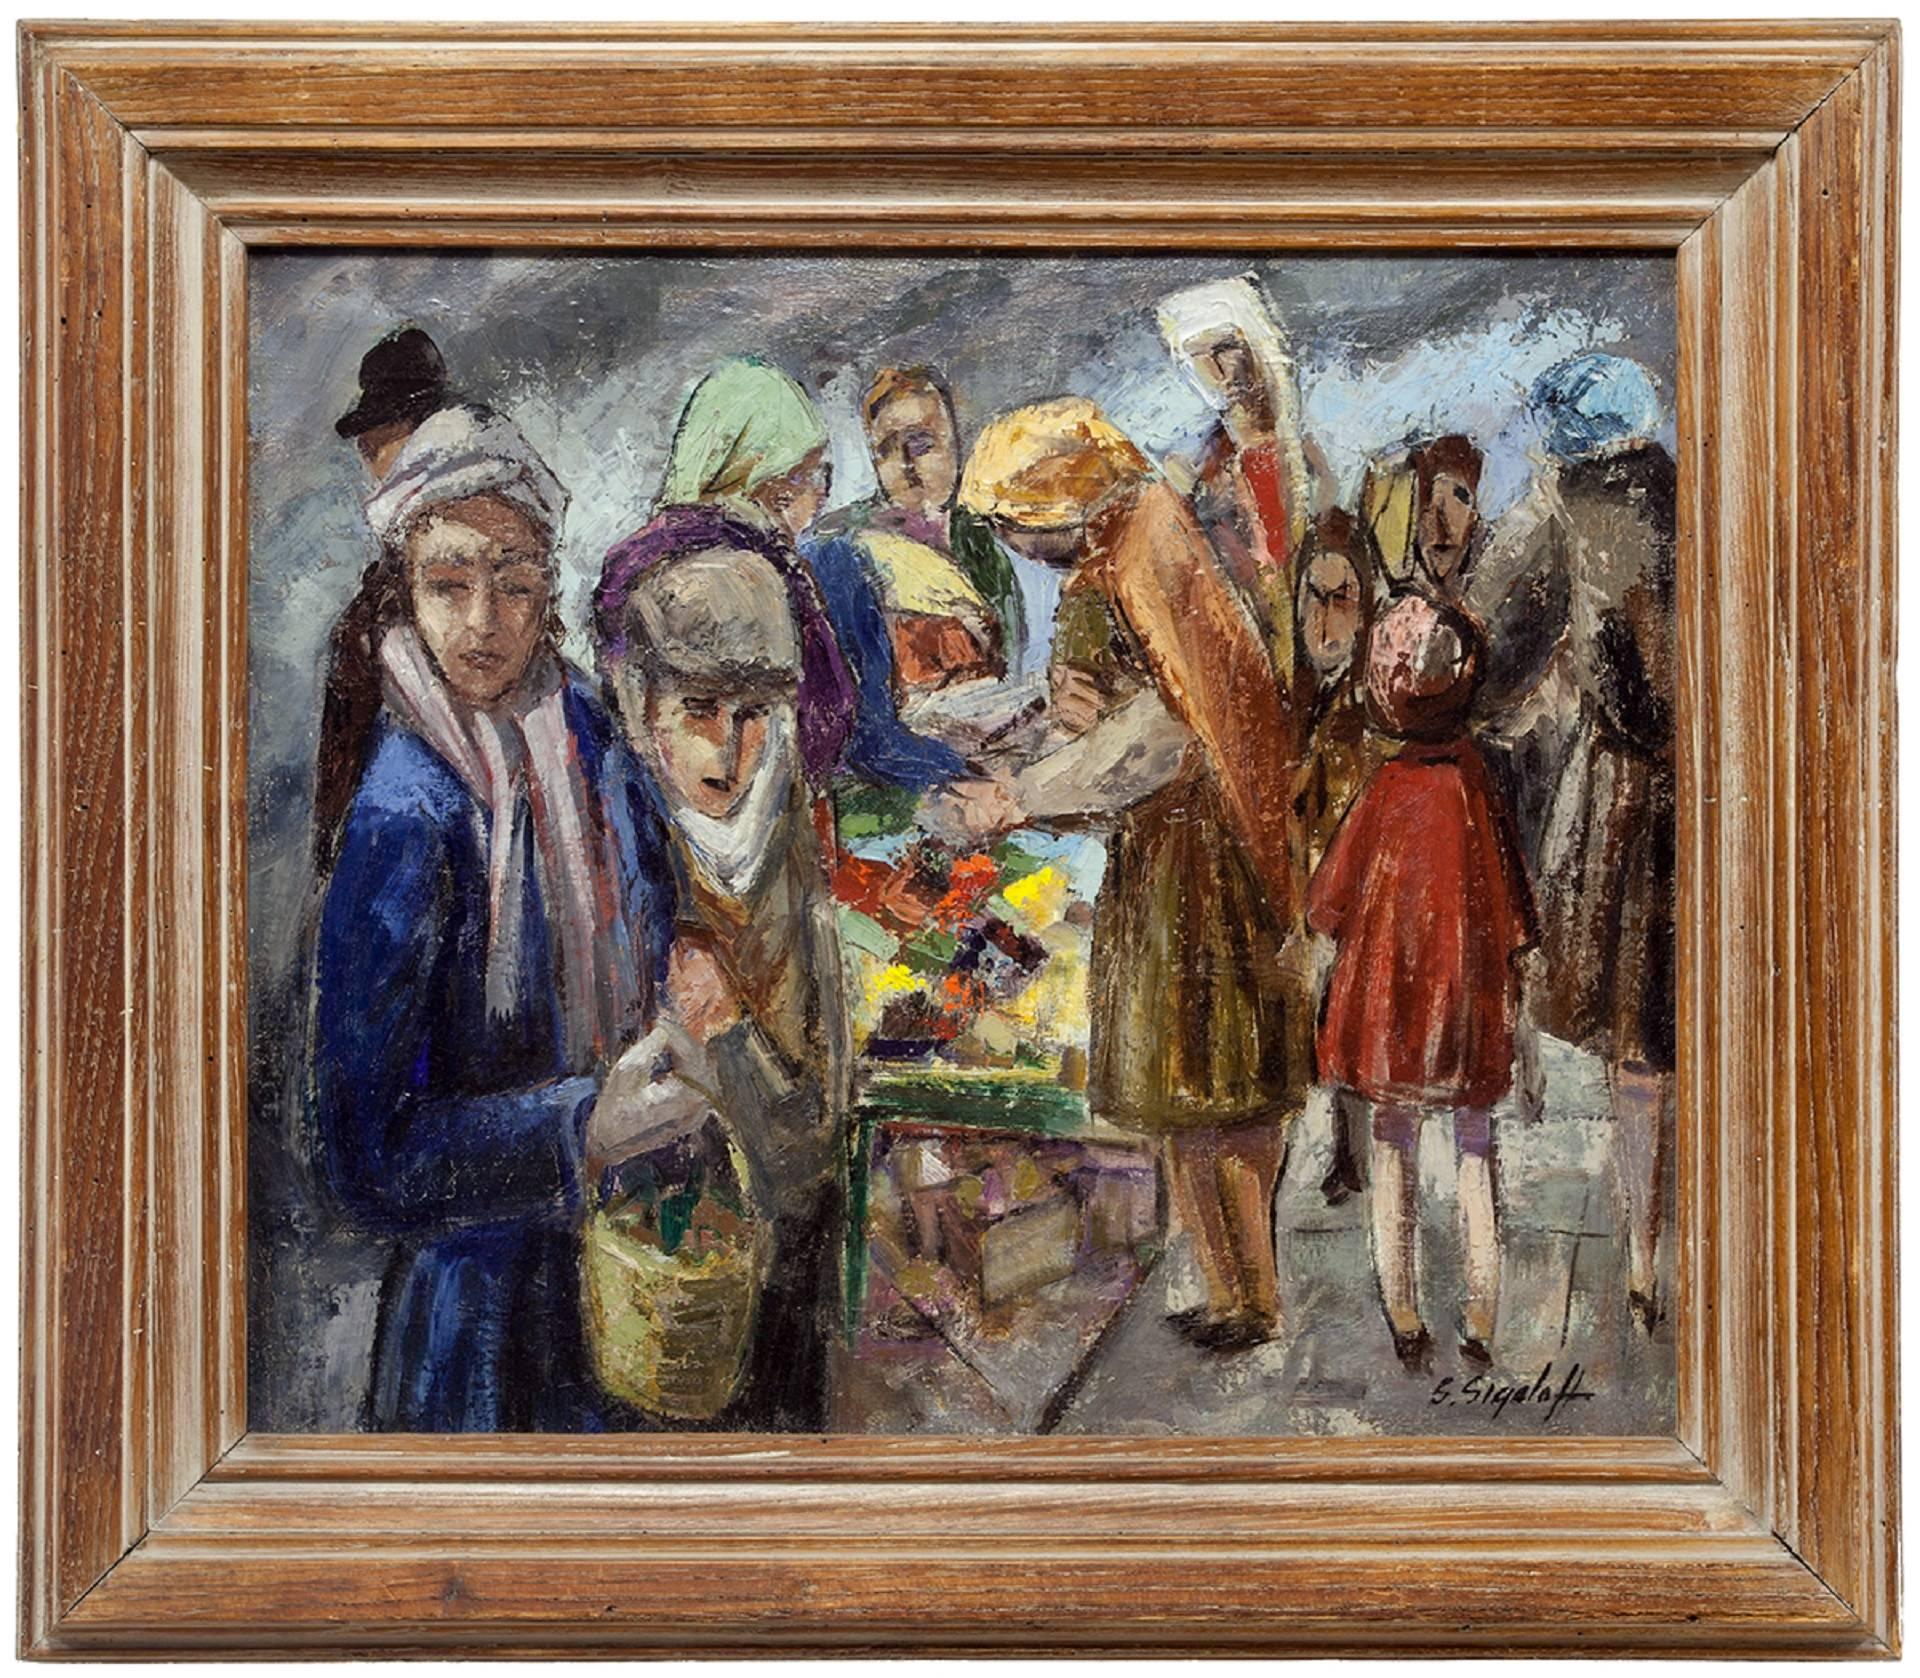 Jewish Peddlers on Market Day